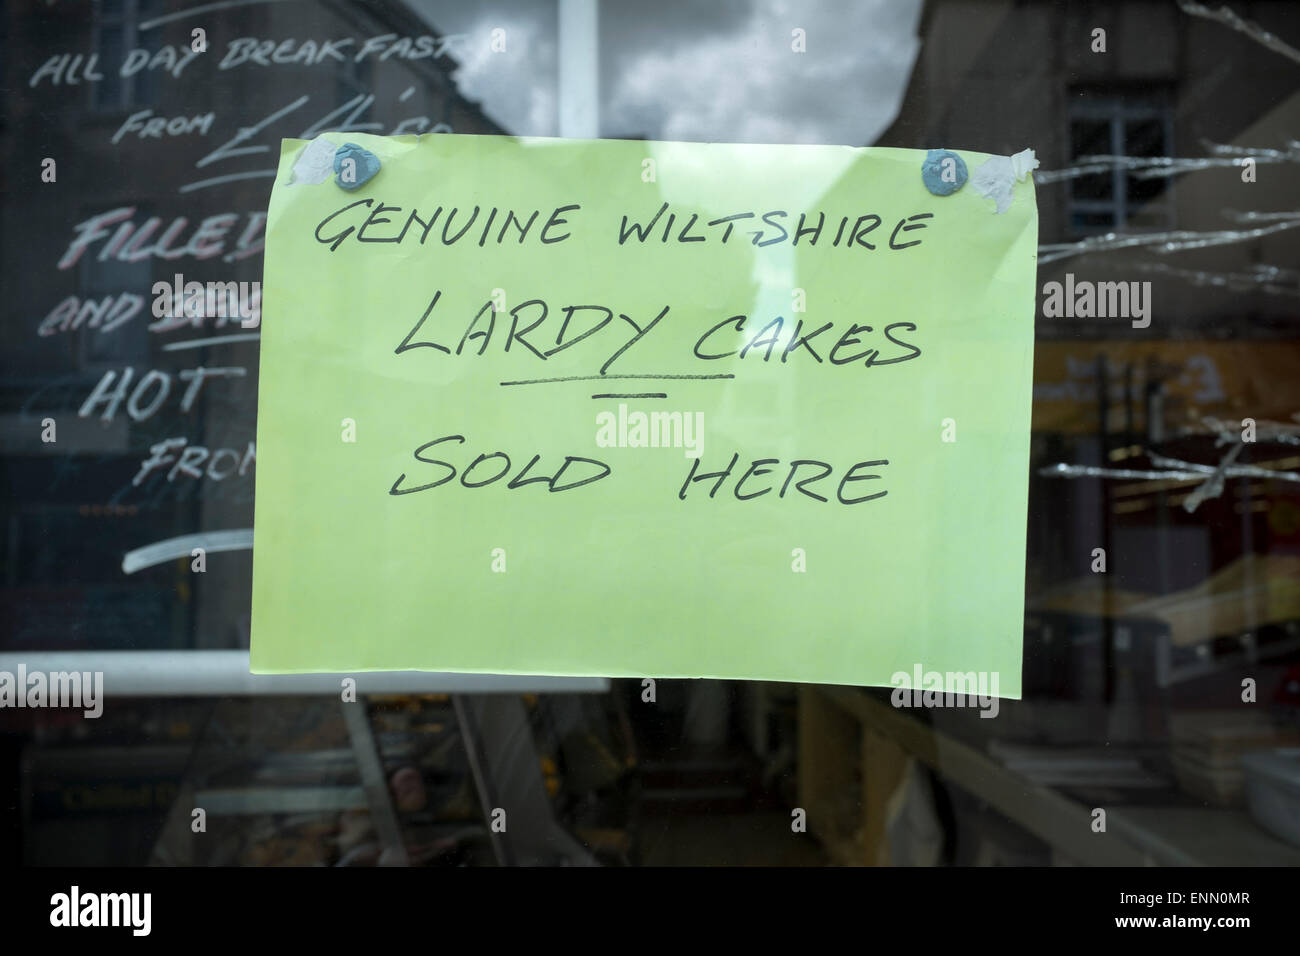 Bäckerei Schaufenster melden Werbung "echte Wiltshire Lardy Kuchen" Stockfoto